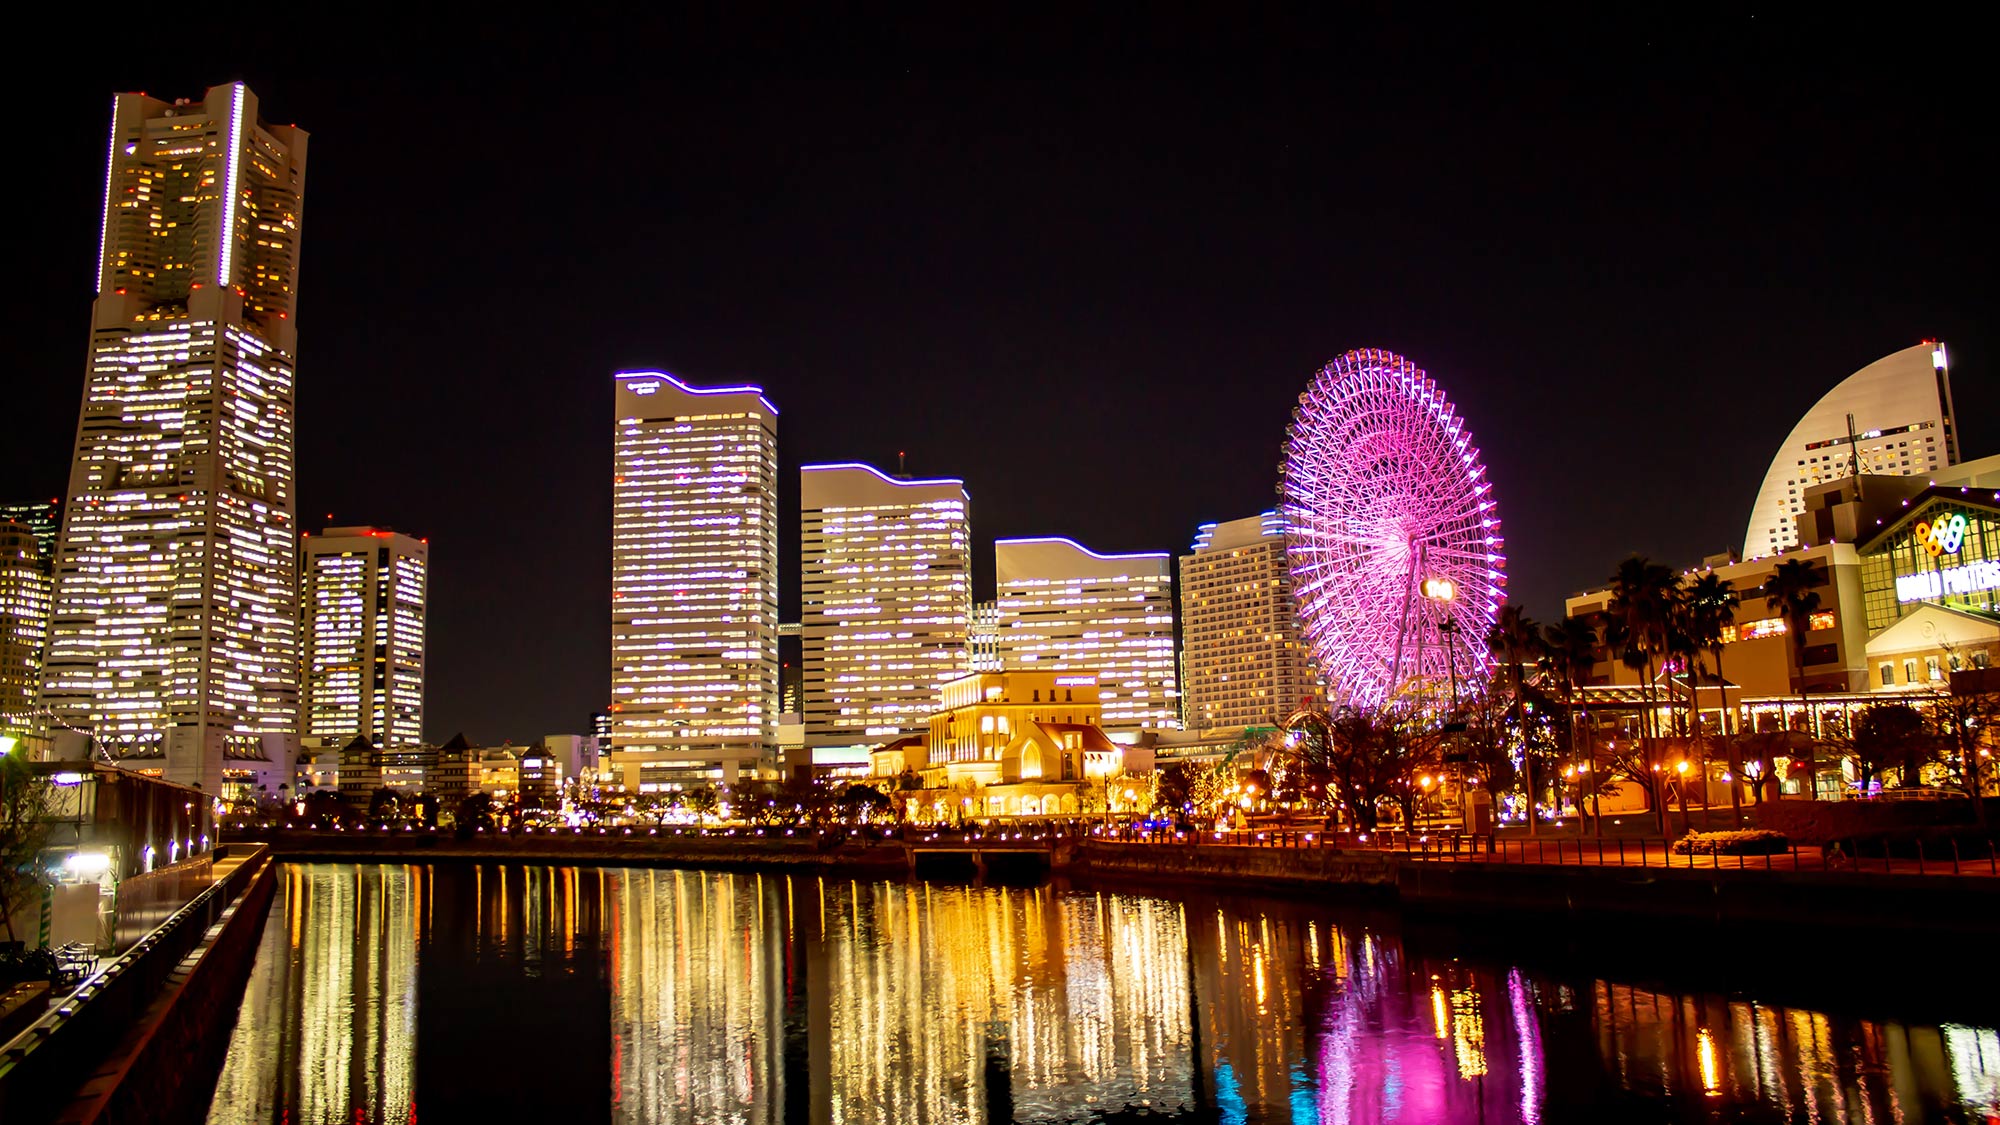 ・横浜の美しい夜景をぜひご覧ください